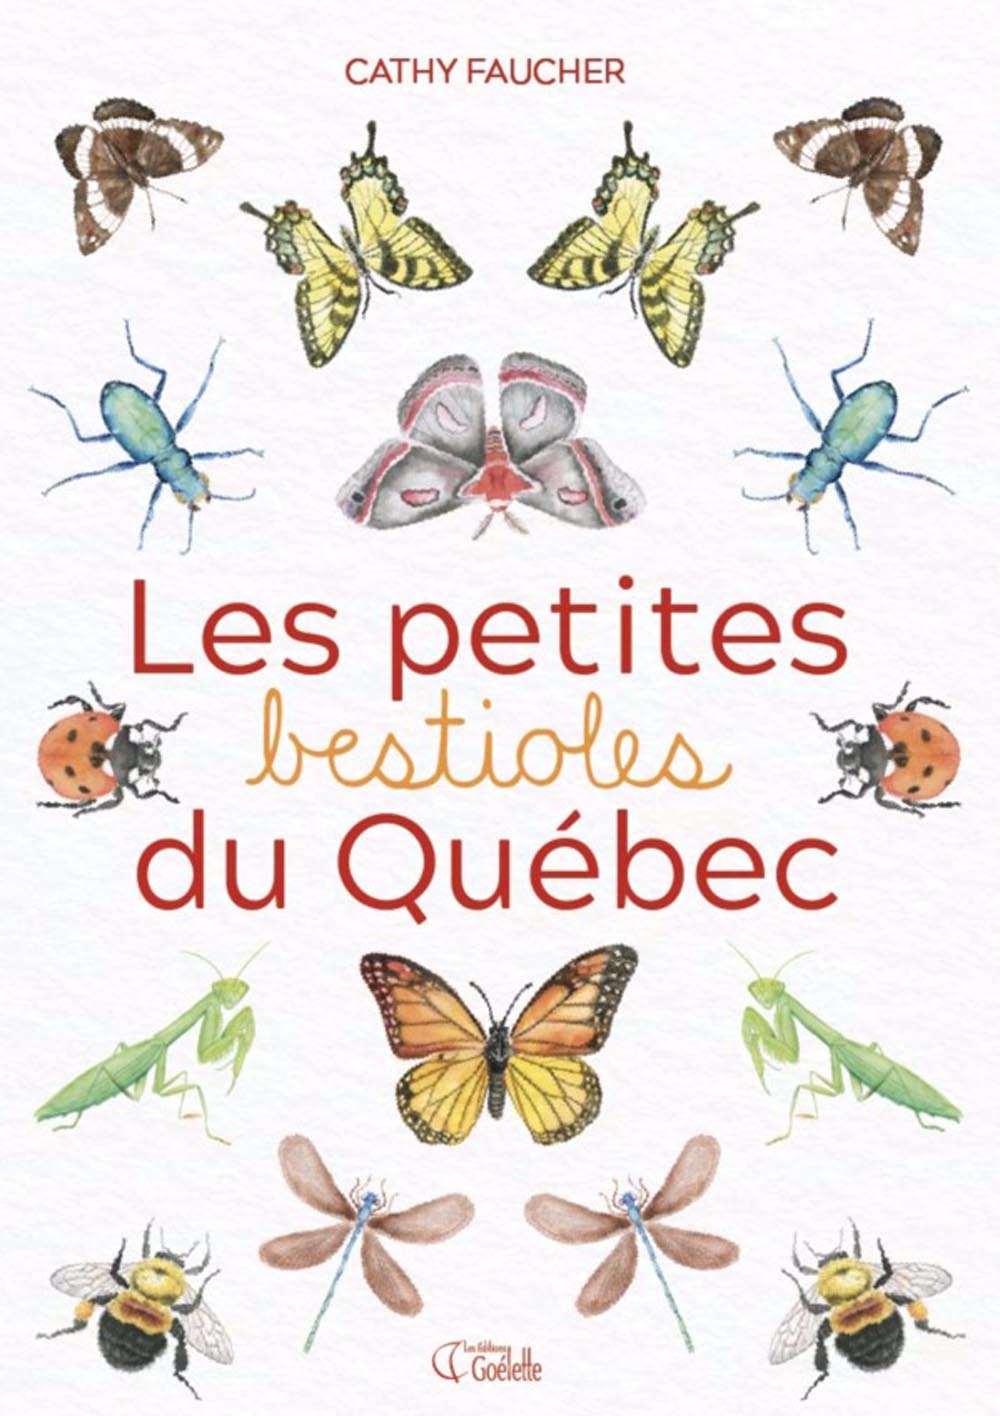 Les petites bestioles du Québec écrit et illustré par Cathy Faucher